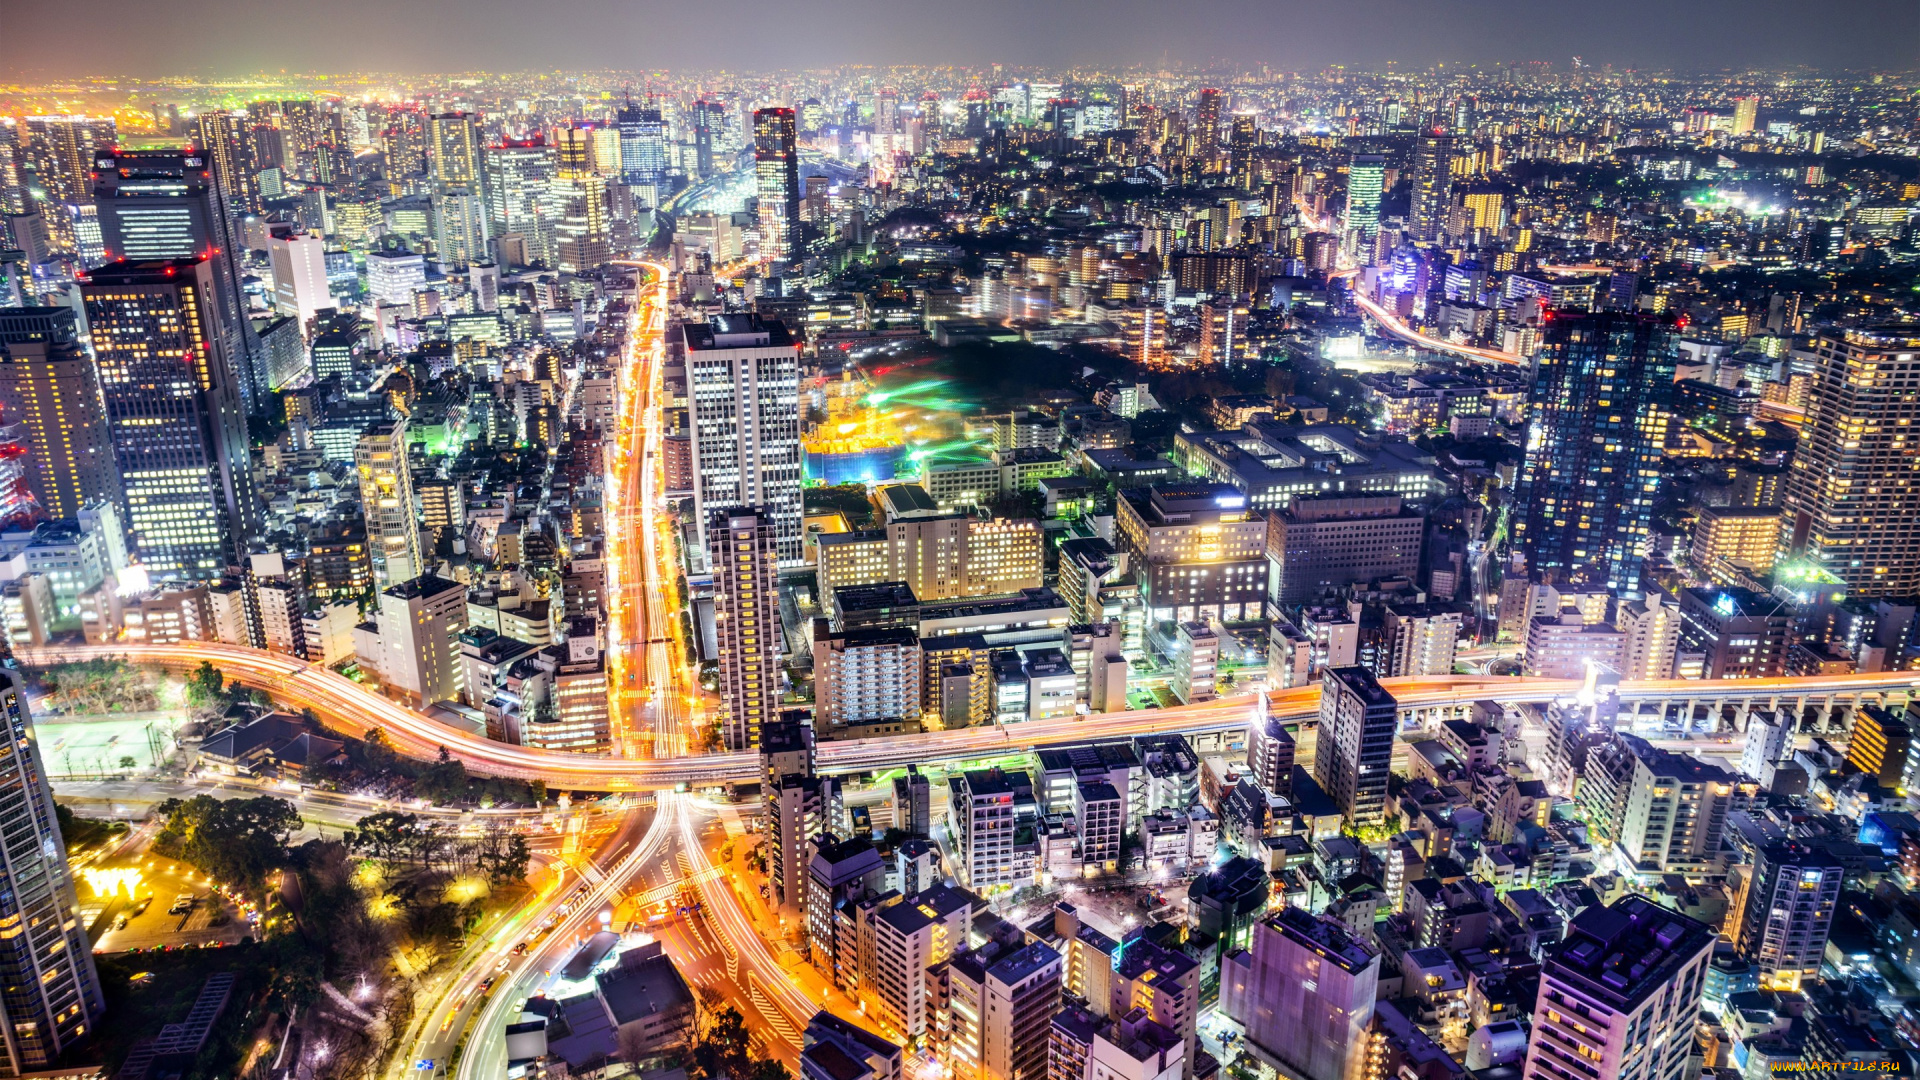 города, токио, , Япония, ночь, огни, яркие, панорама, дороги, дома, улицы, мегаполис, tokyo, токио